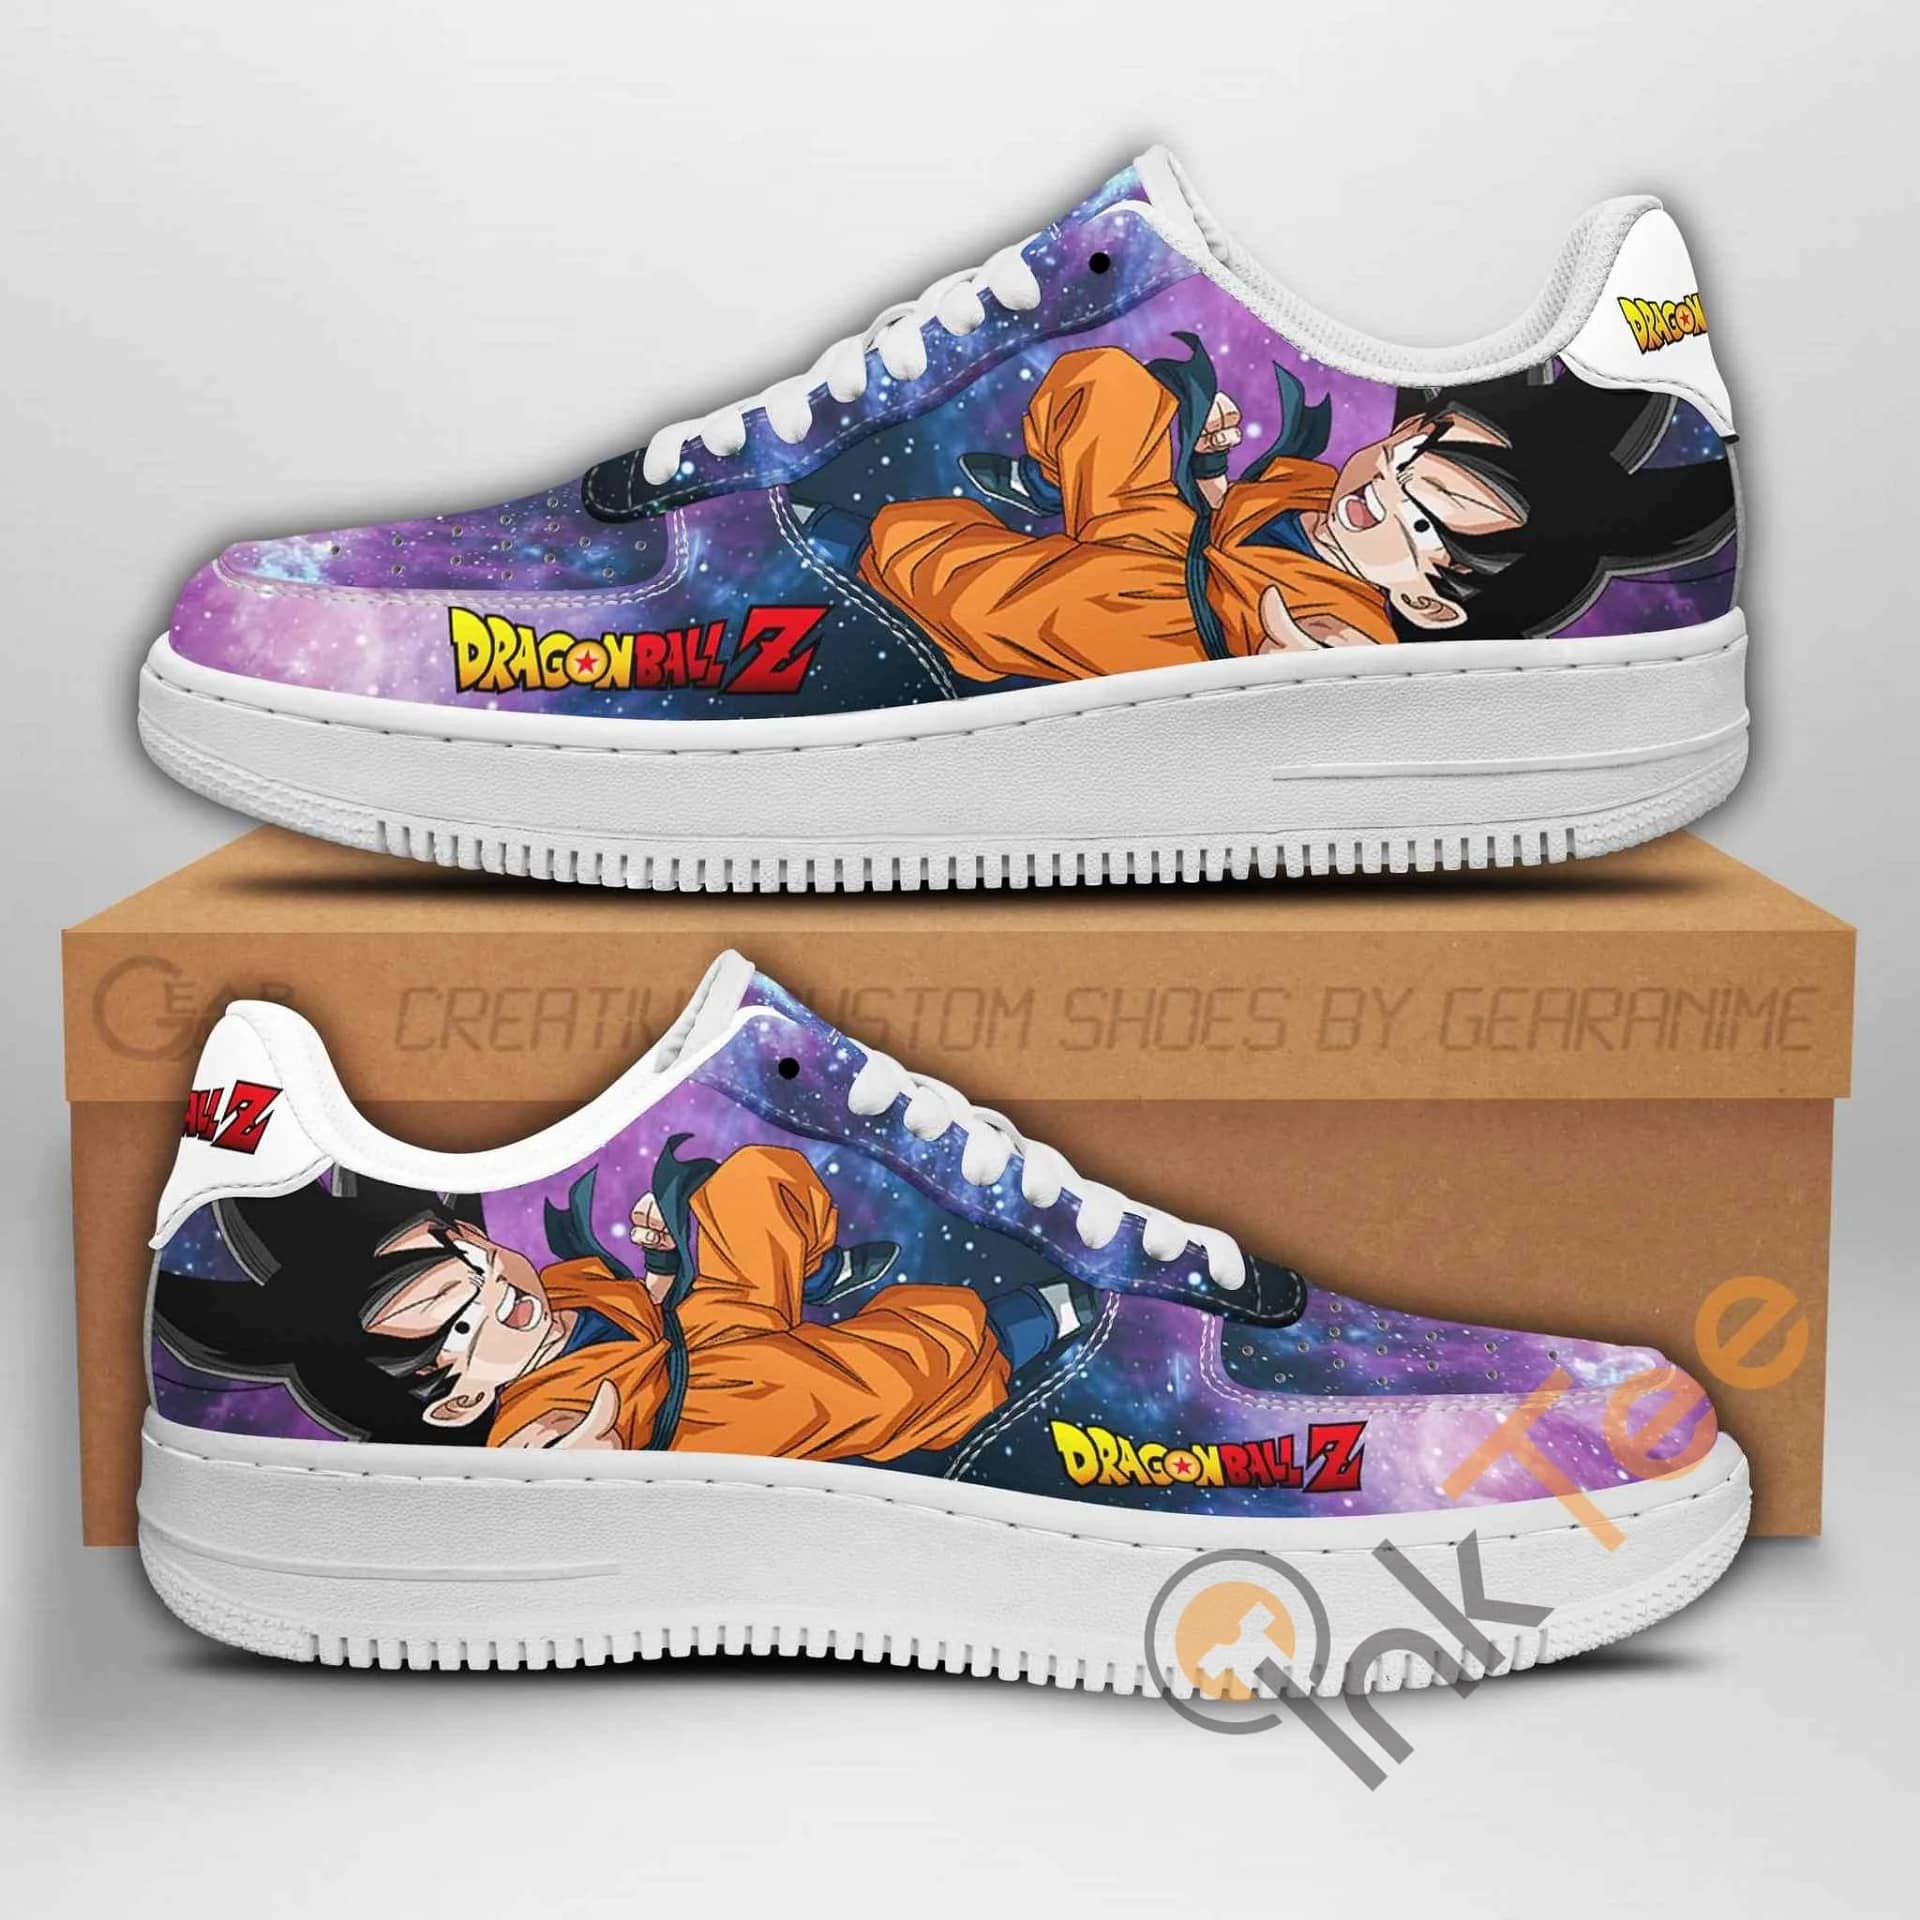 Goten Dragon Ball Z Anime Nike Air Force Shoes